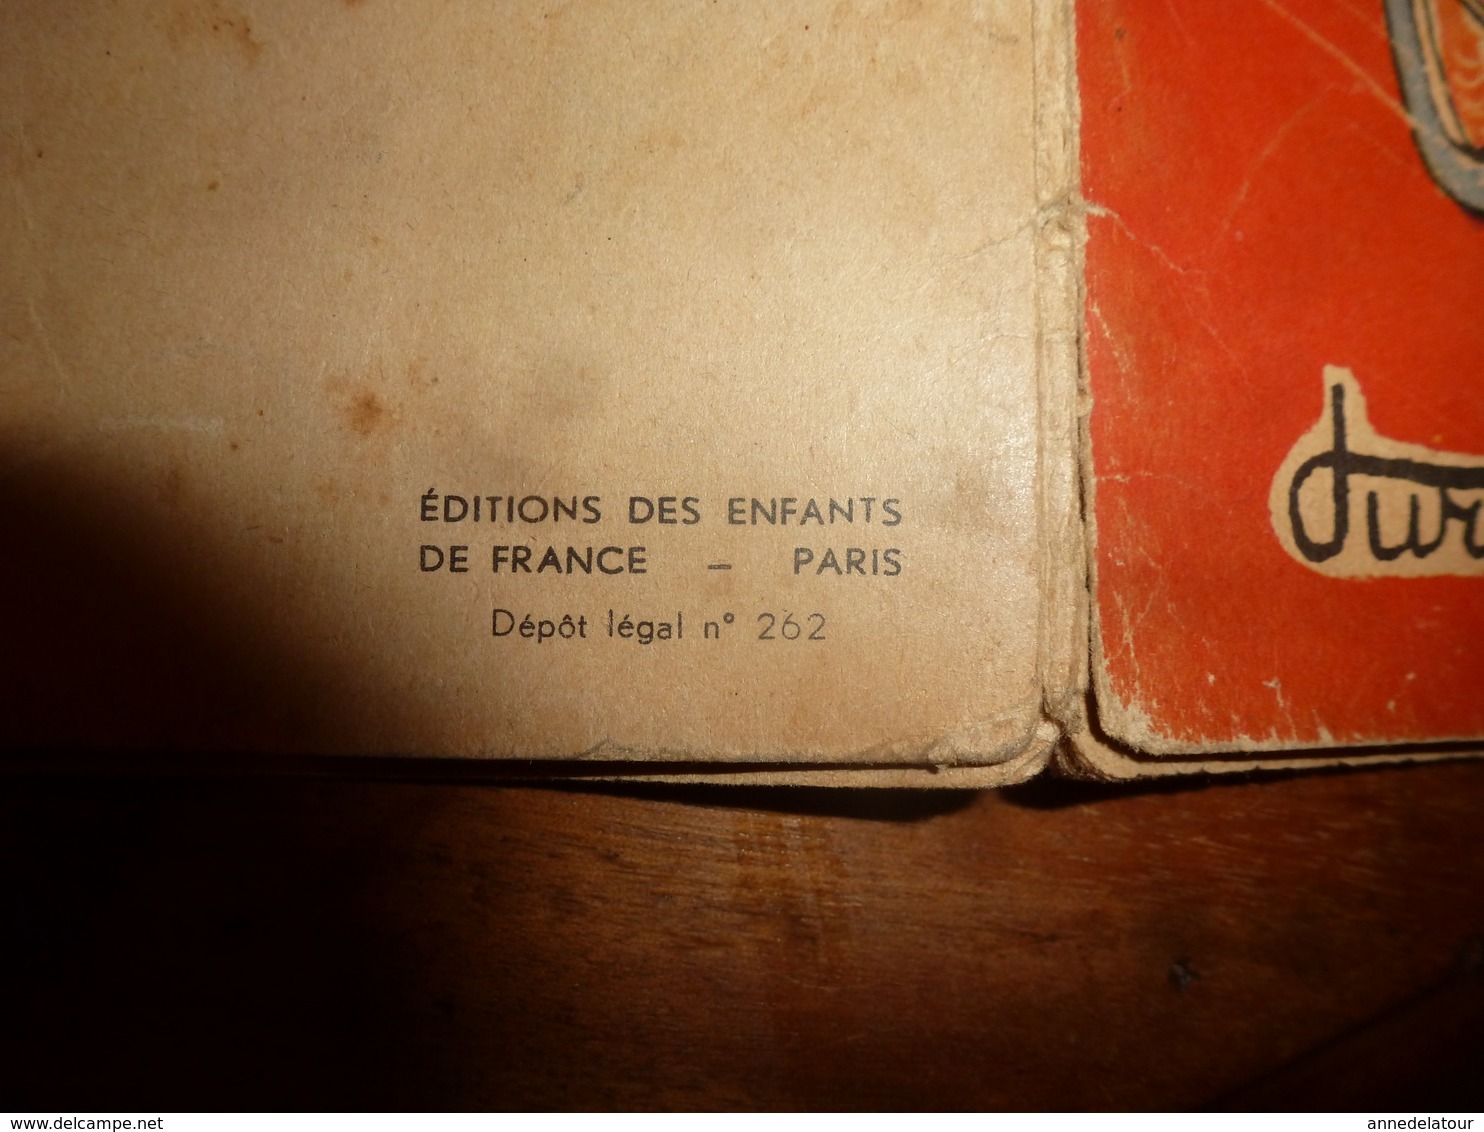 1954 NOUNOUCHE  Boulangère  "au Croissant Chaud",   Texte Et Dessins De DURST - Collections